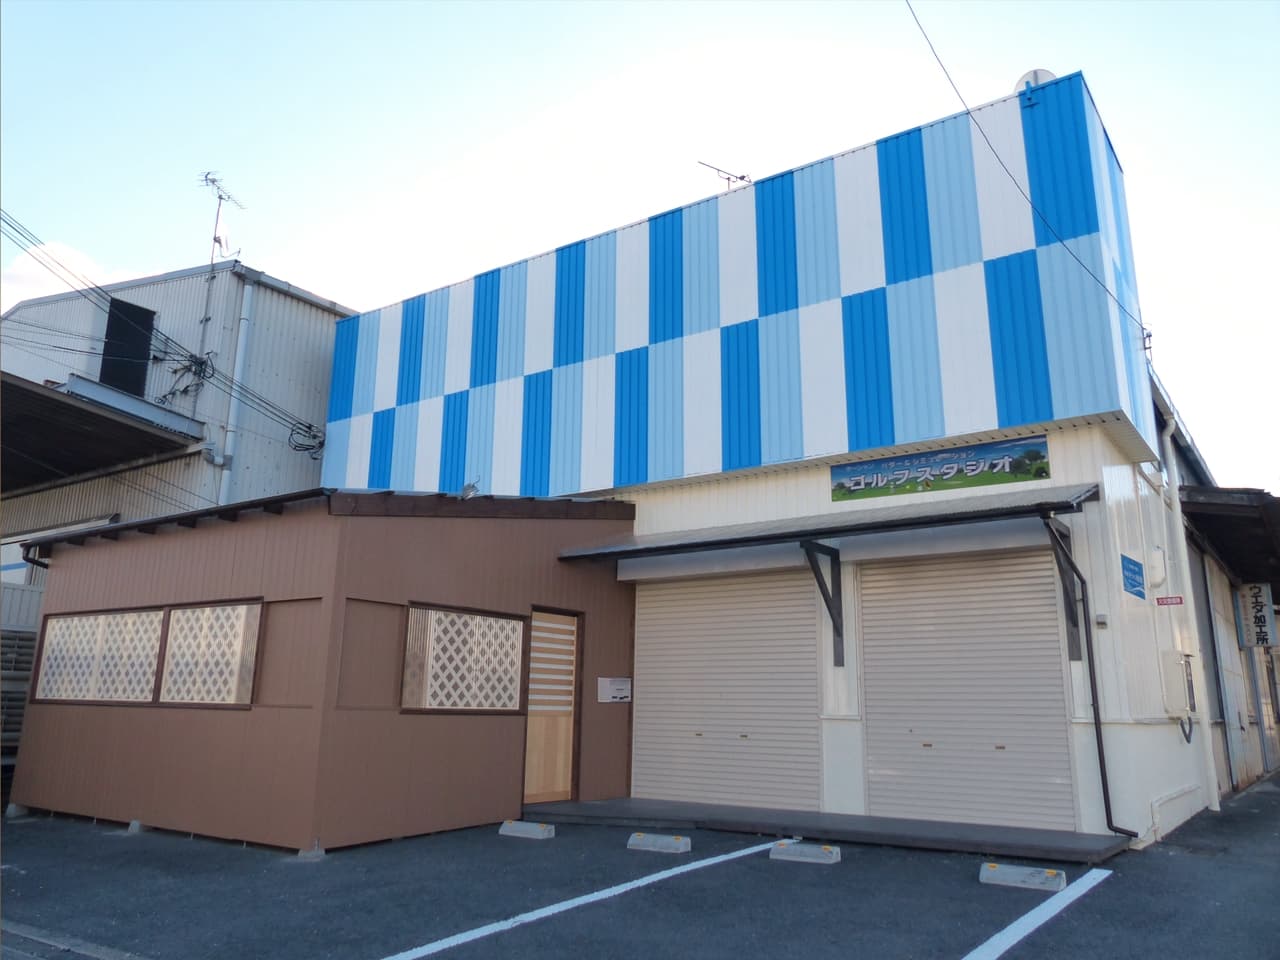 オーシャンゴルフスタジオ, ocean golf studio ,大阪府門真市, kadoma city in Osaka Pref.